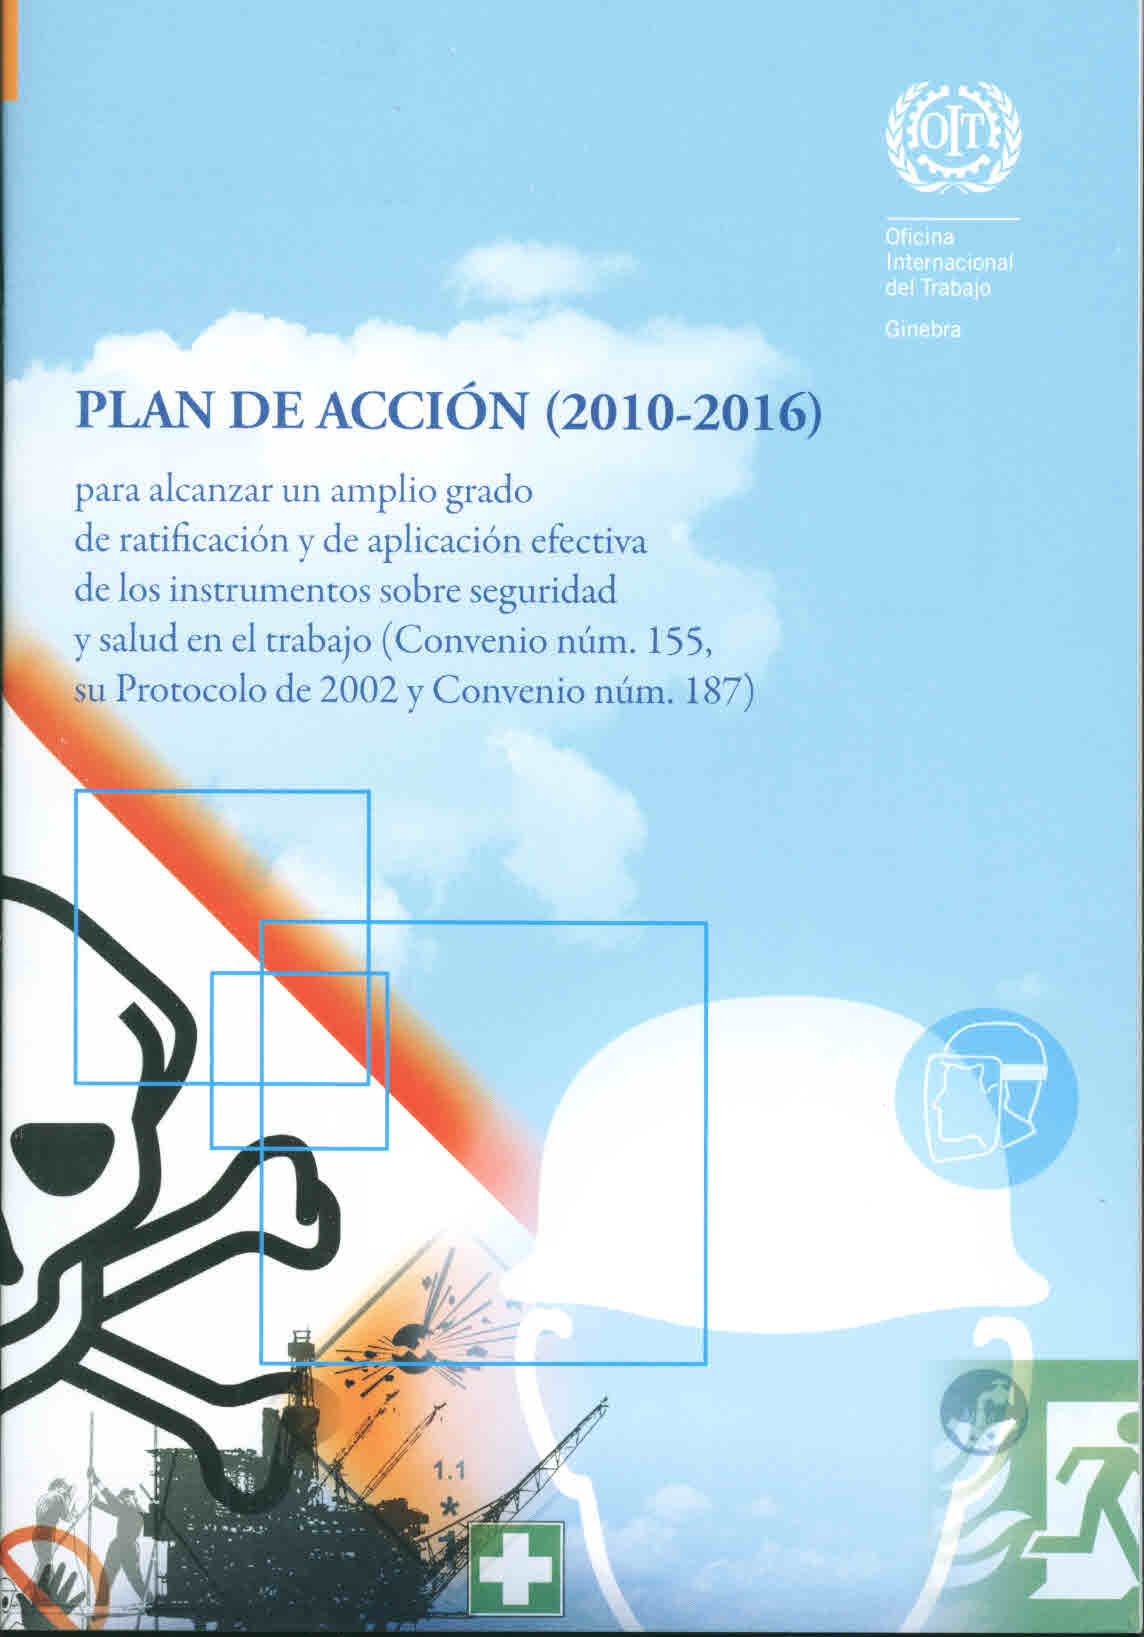 Plan de acción (2010-2016) para alcanzar un amplio grado de ratificación y de aplicación efectiva de los instrumentos sobre seguridad y salud en el trabajo (Convenio núm. 155, su protocolo de 2002 y Convenio núm. 187)